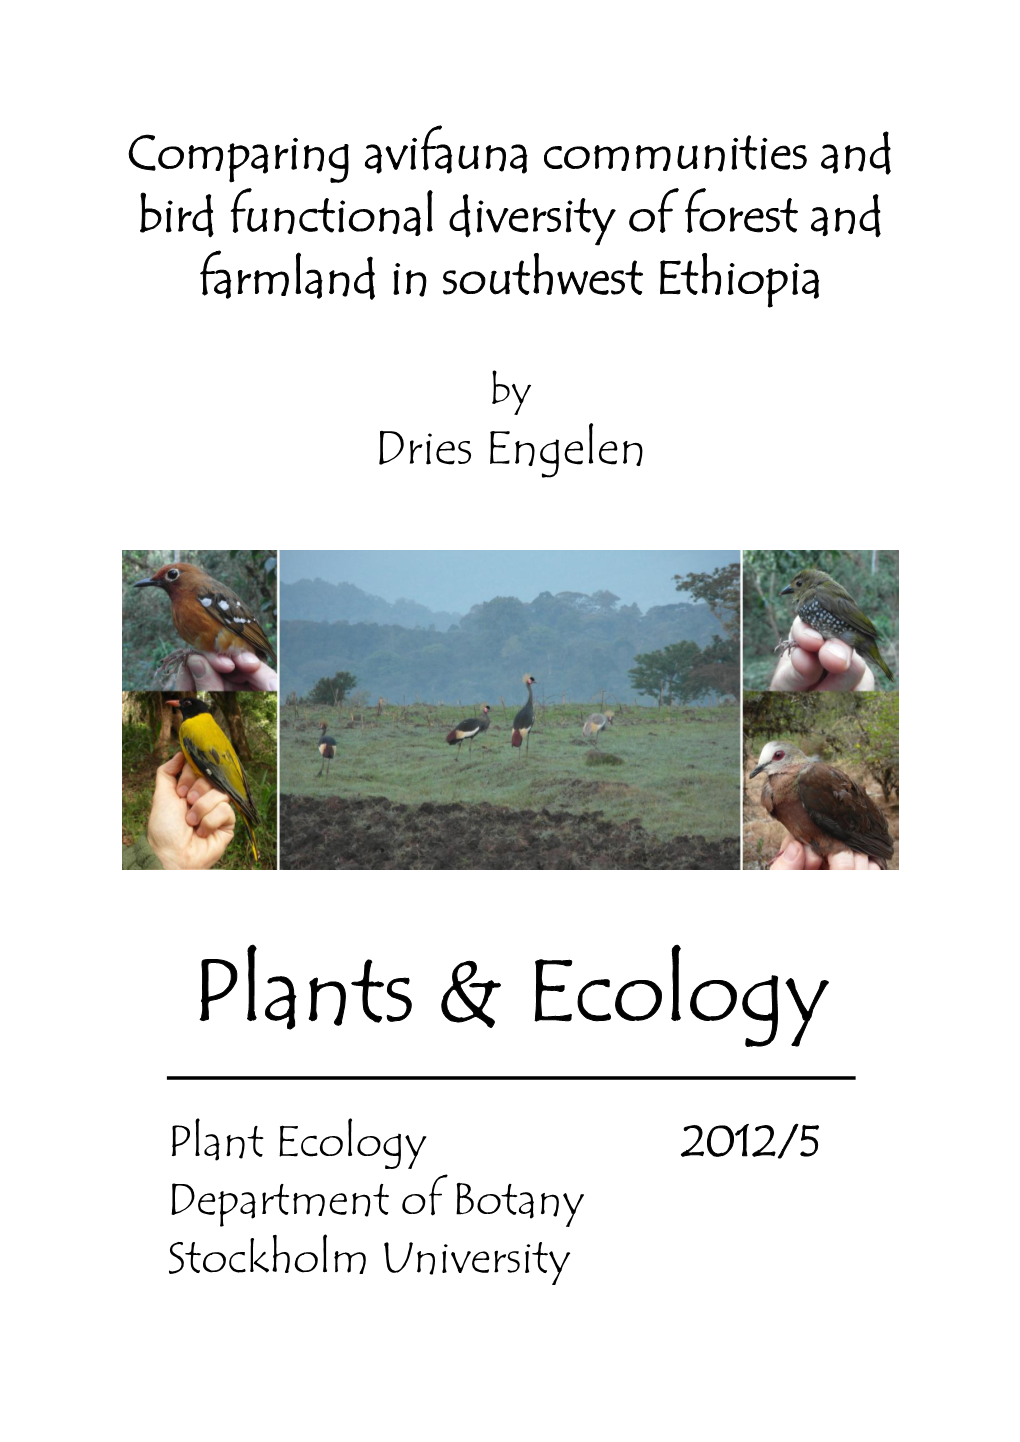 Plants & Ecology